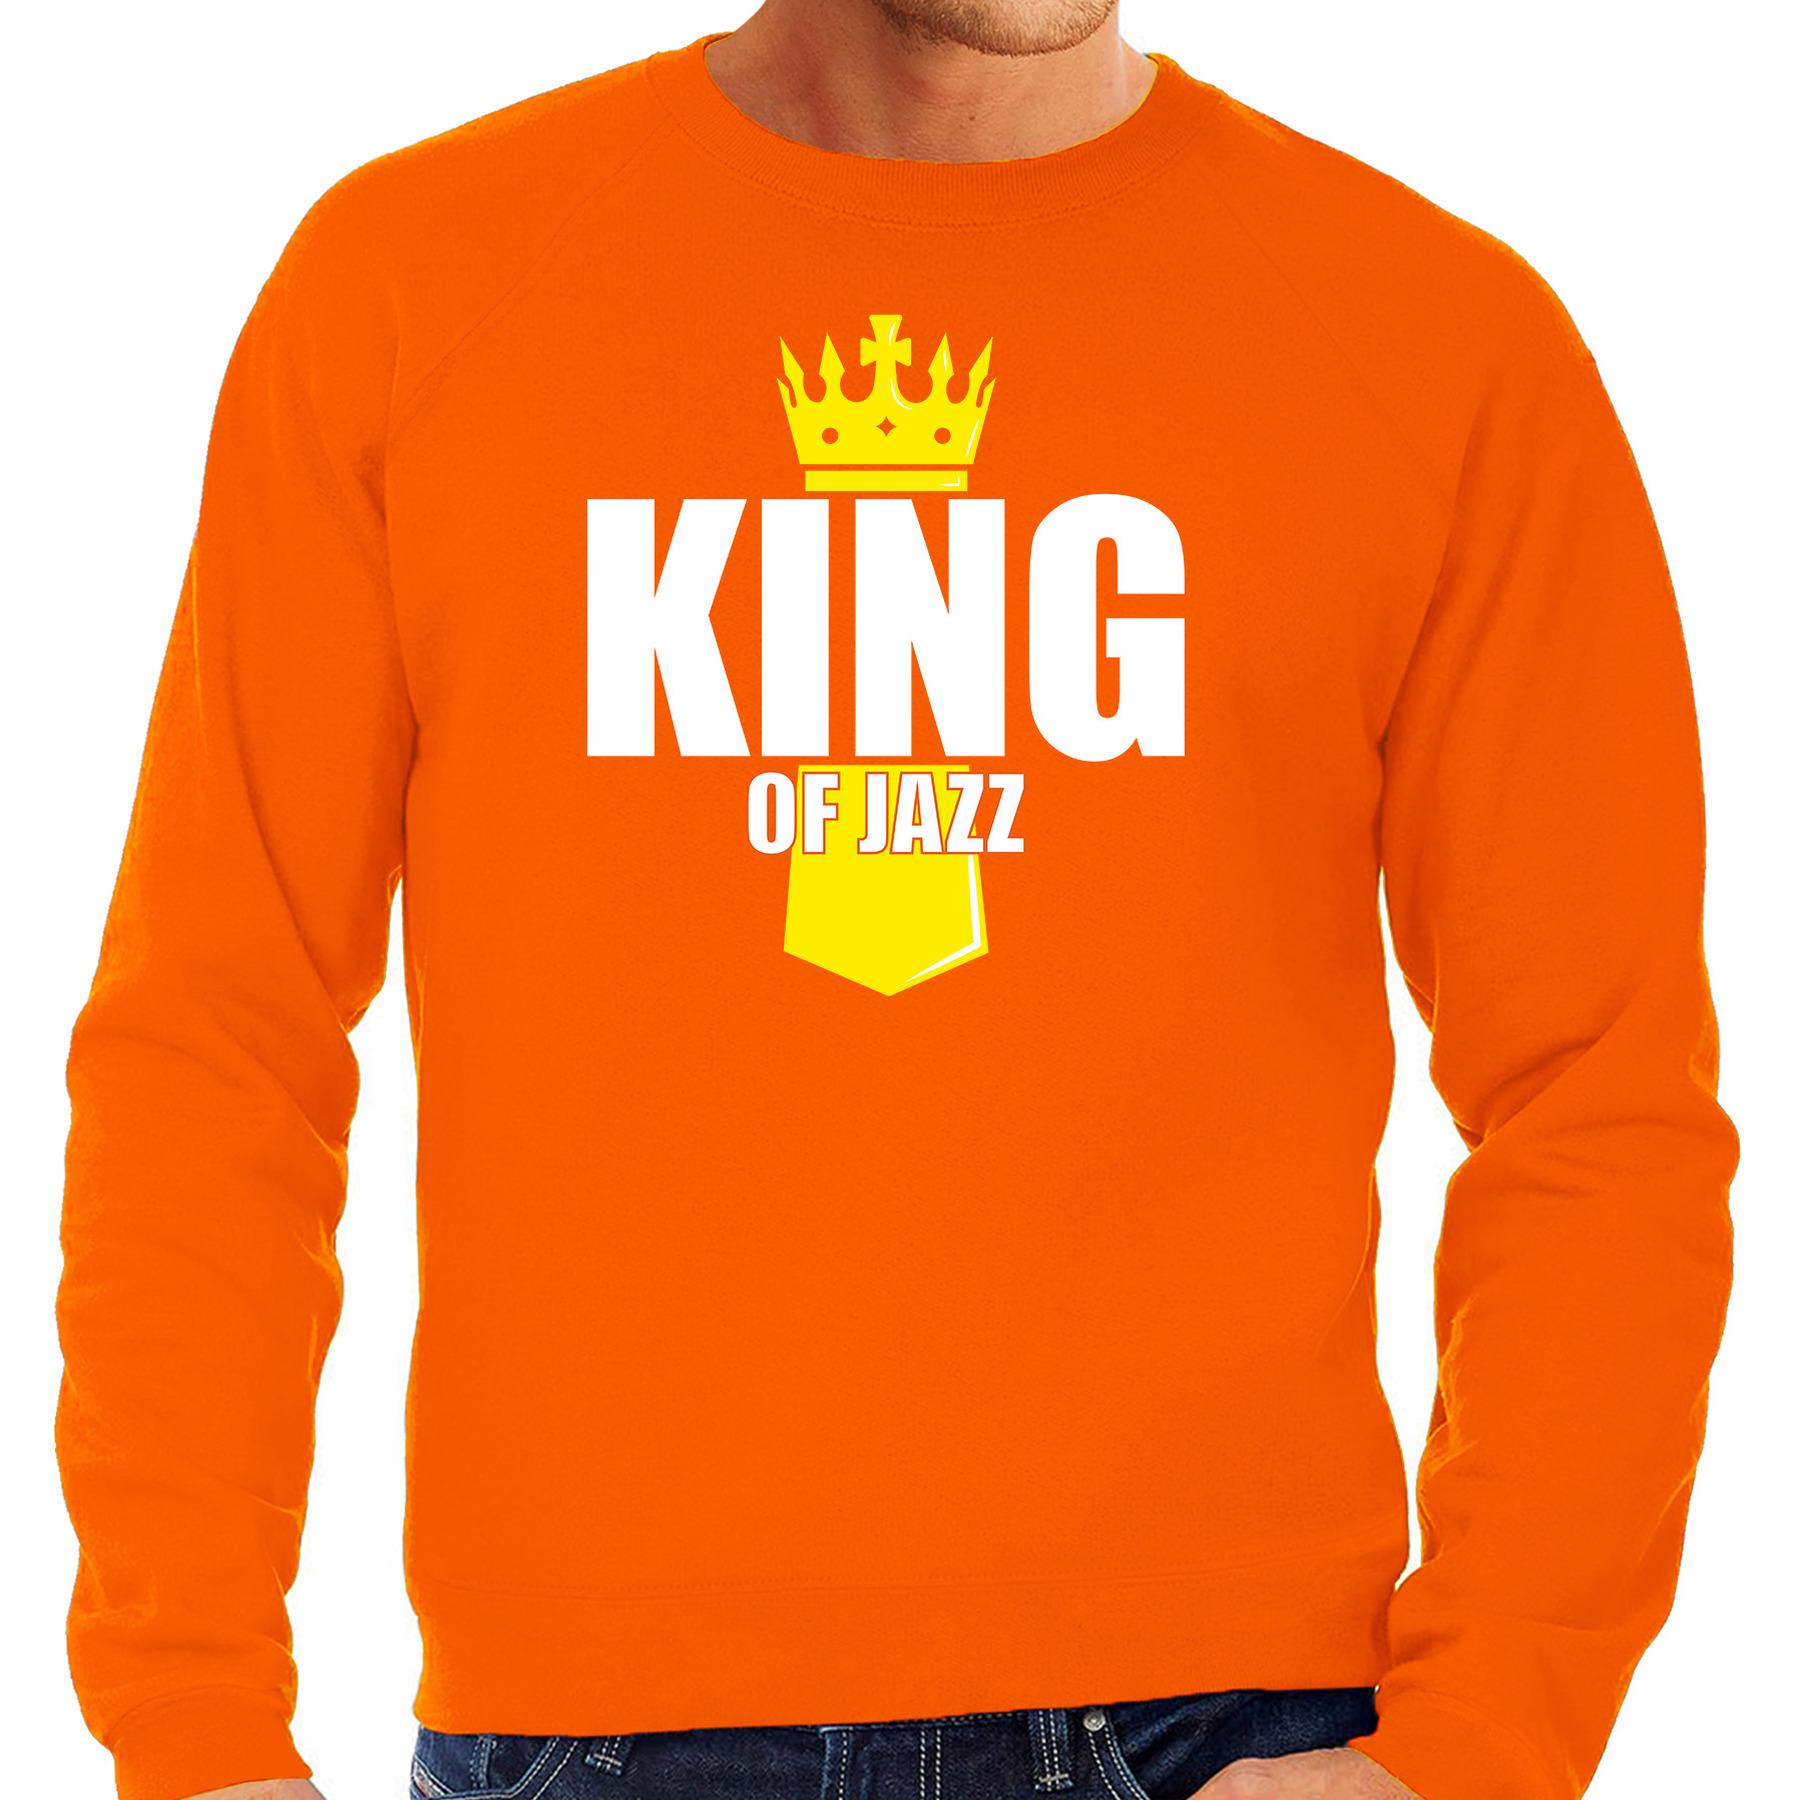 King of jazz met kroontje Koningsdag sweater - trui oranje voor heren